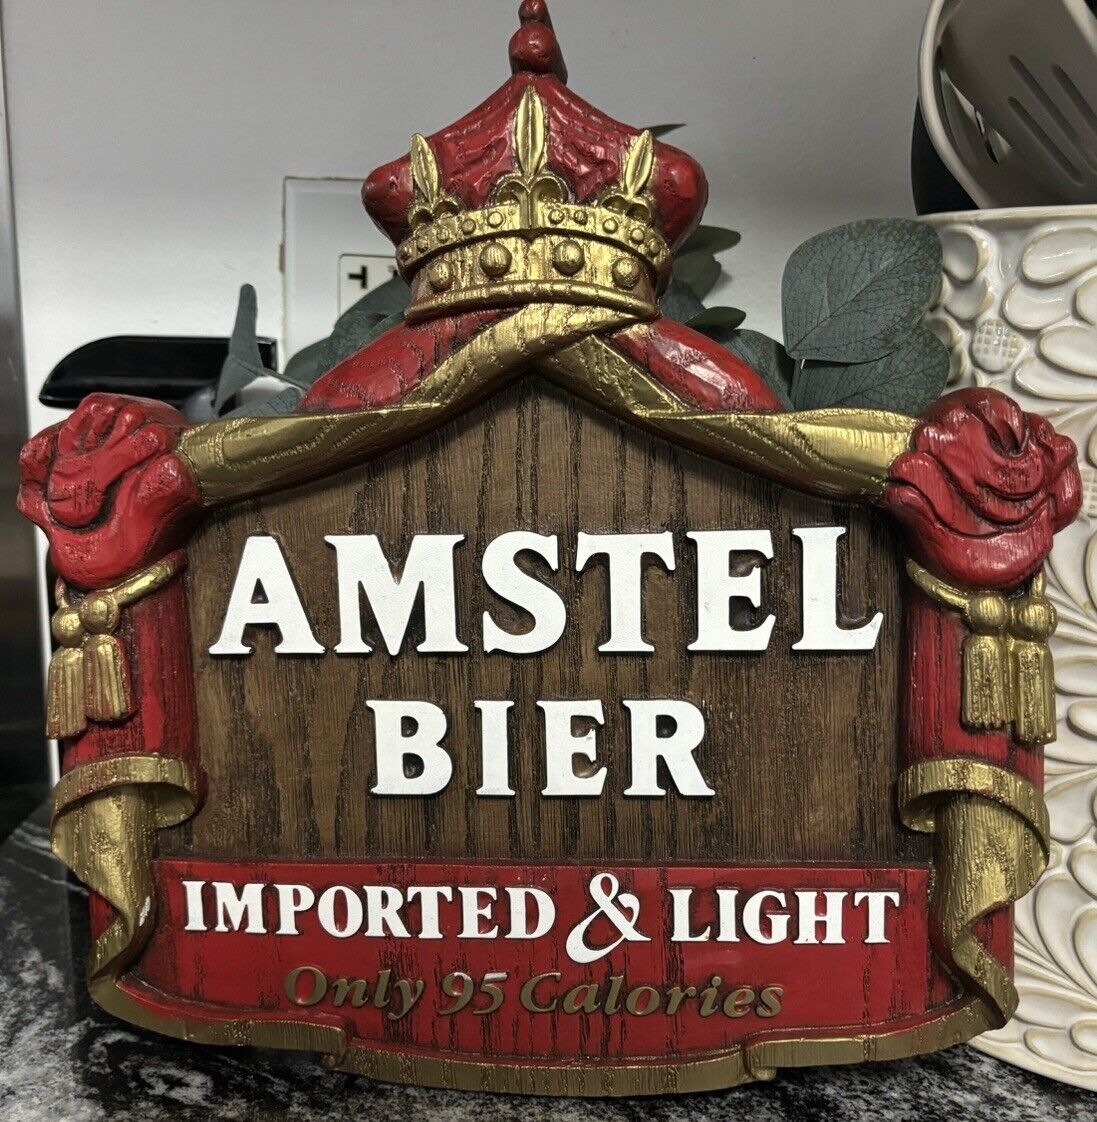 Vintage 1982 Beer Sign Amstel Bier Imported & Light. Man Cave, billiard room.